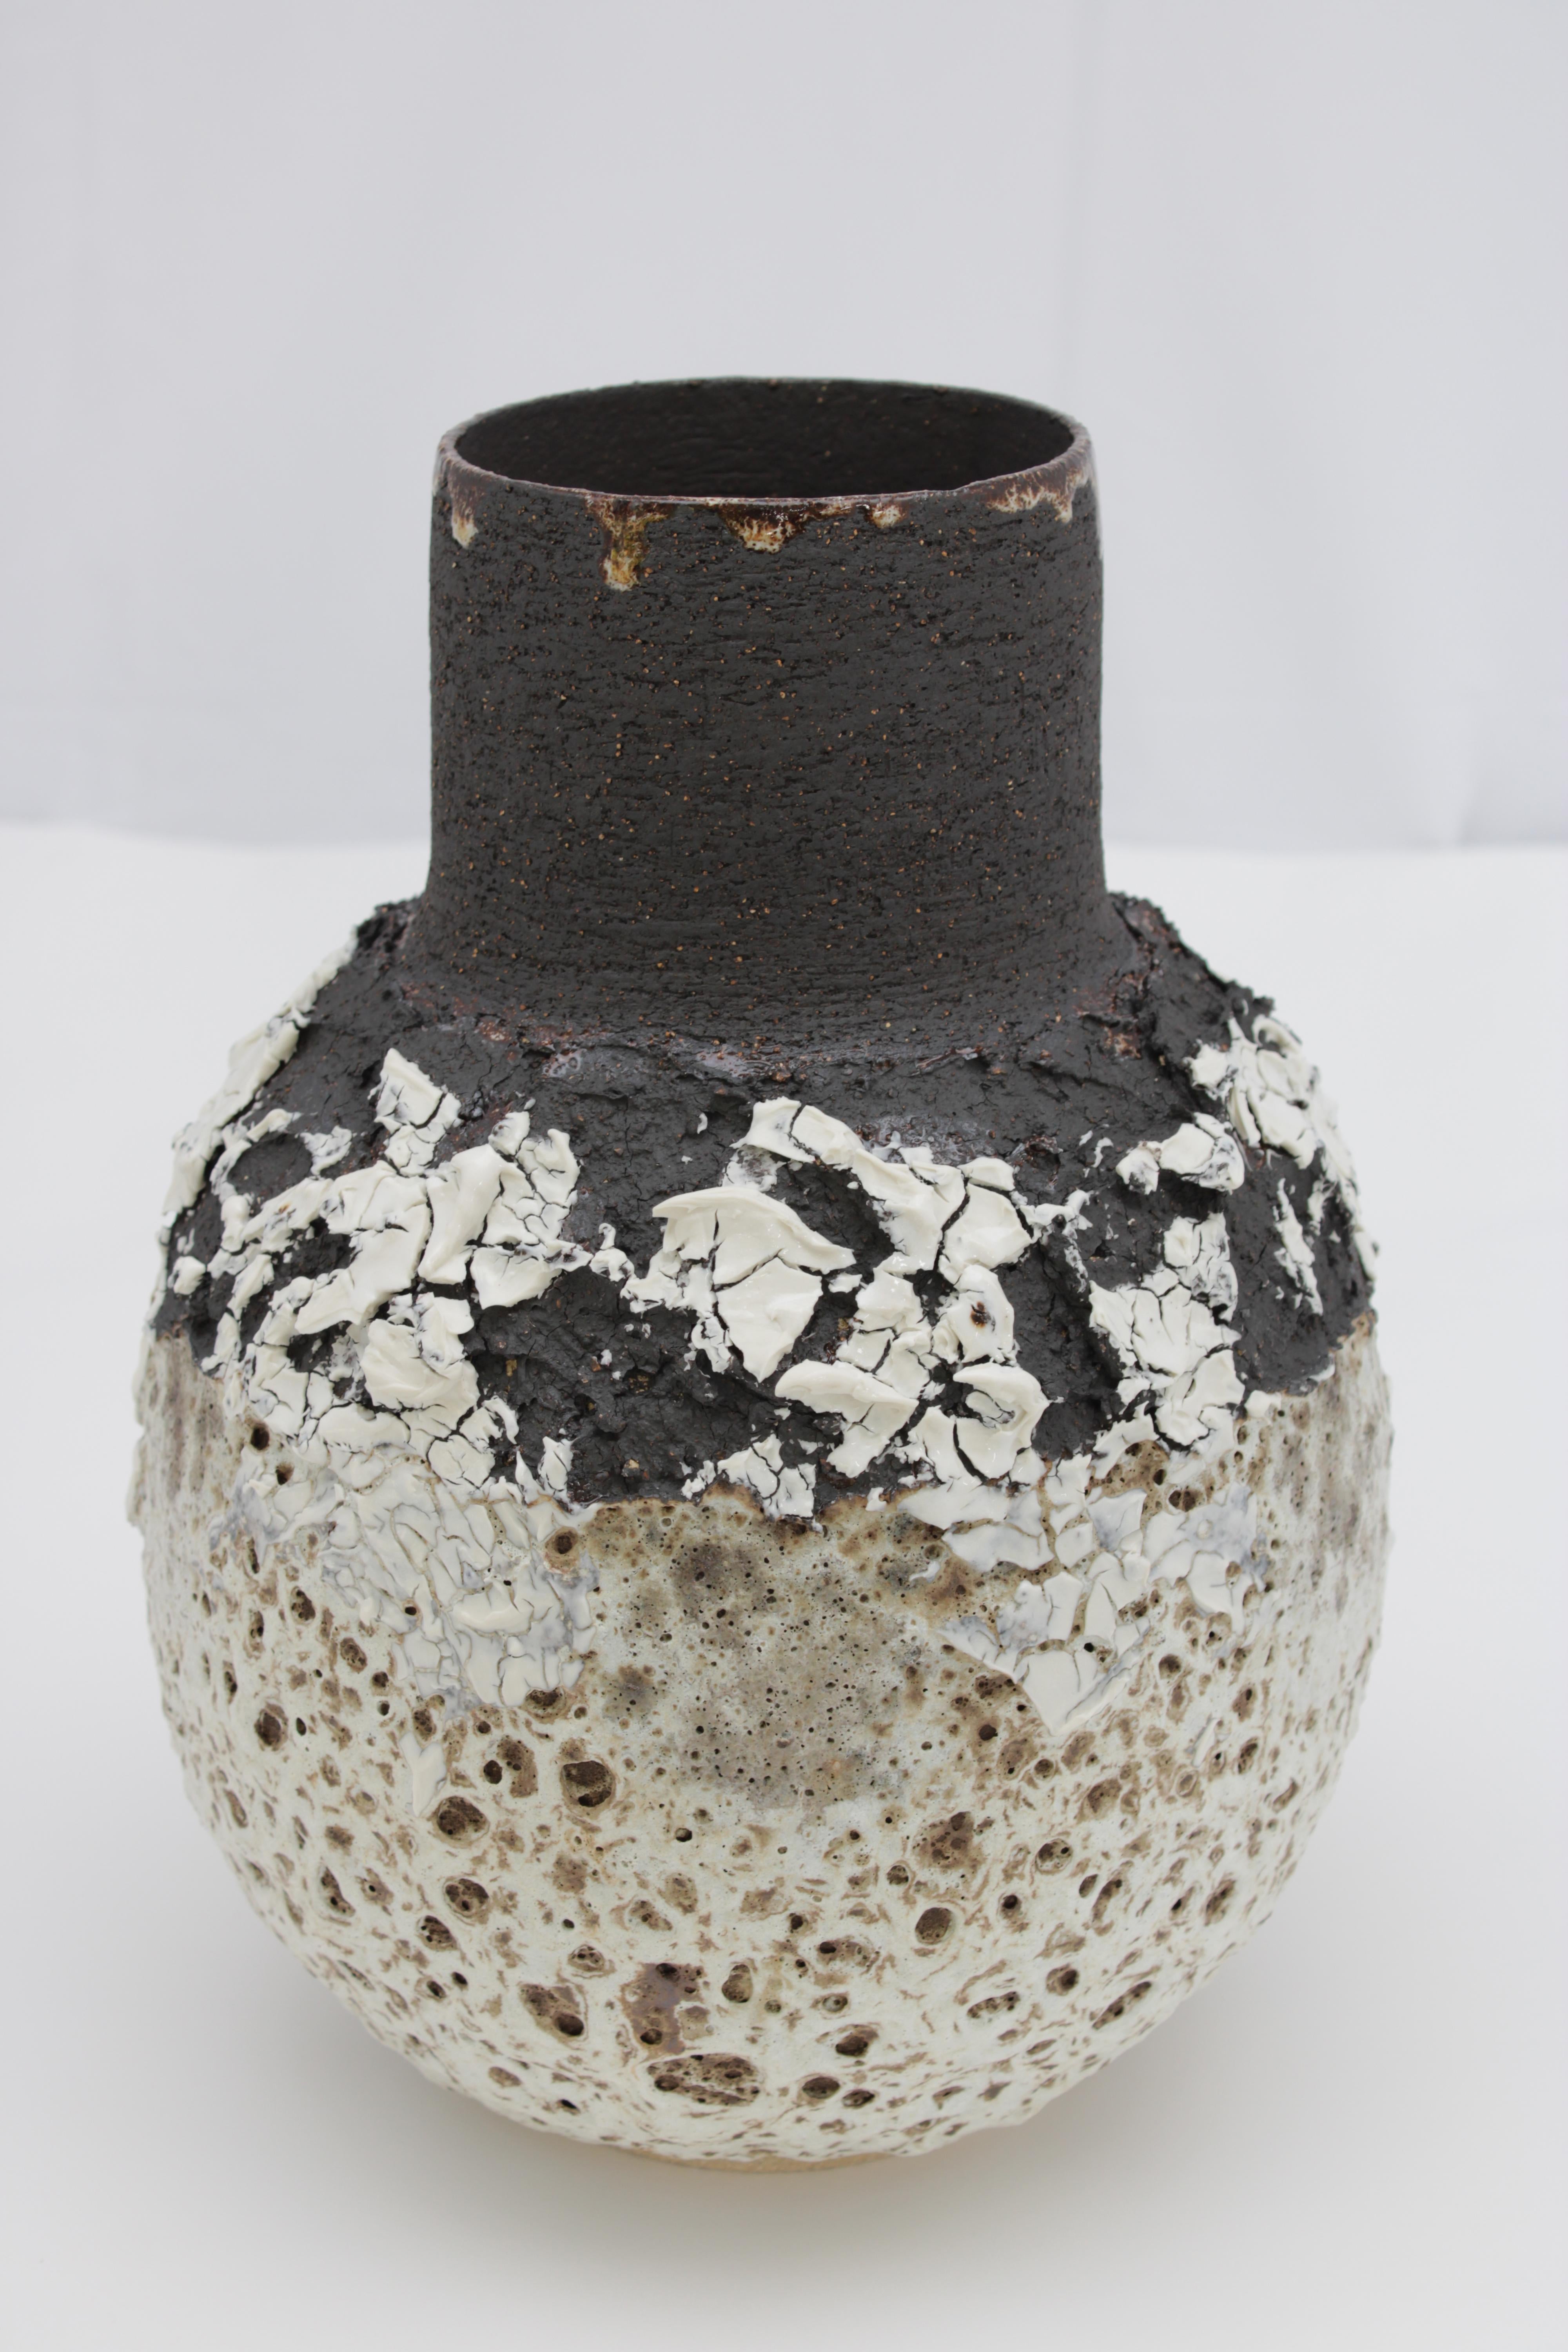 Un grand vase volcanique fortement texturé avec une glaçure et des marques noires, blanches et brunes. Vaisseau à large col avec une forme ventrue. Fabriqué en grès noir texturé et en porcelaine.

L'inspiration de la pièce vient de l'argile